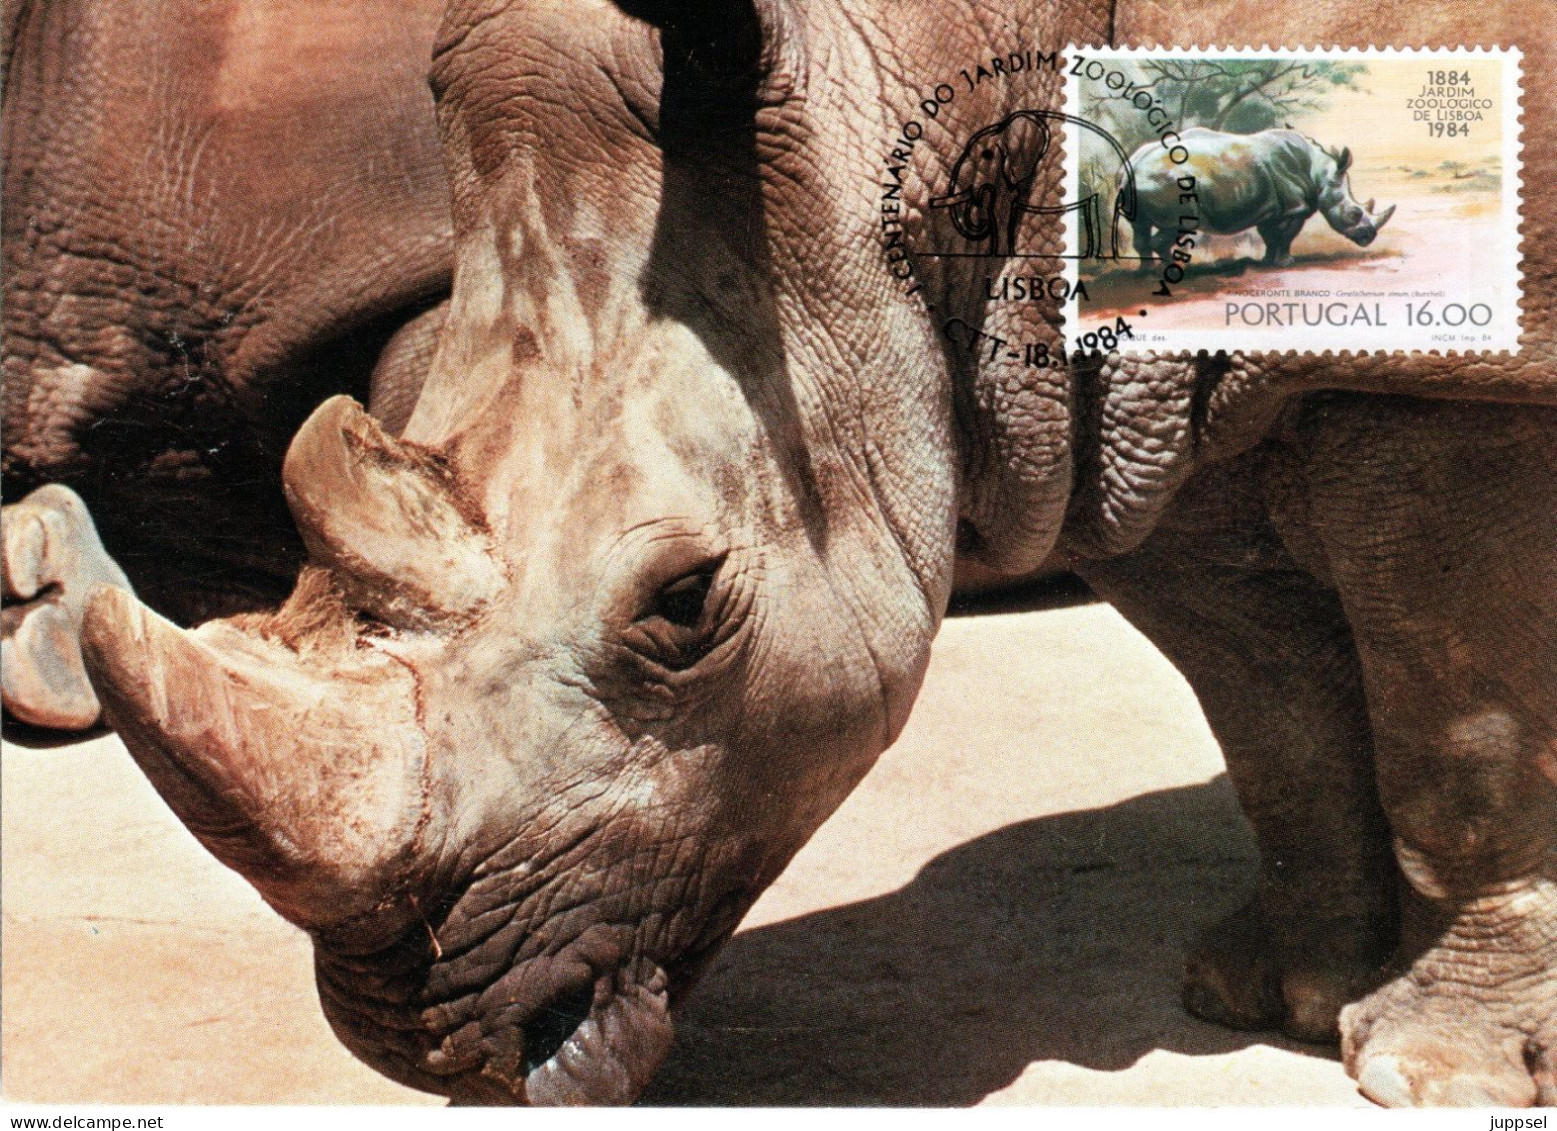 PORTUGAL, MC,  Rhino  /  Carte Maximume, Rhinocéros     1984 - Neushoorn